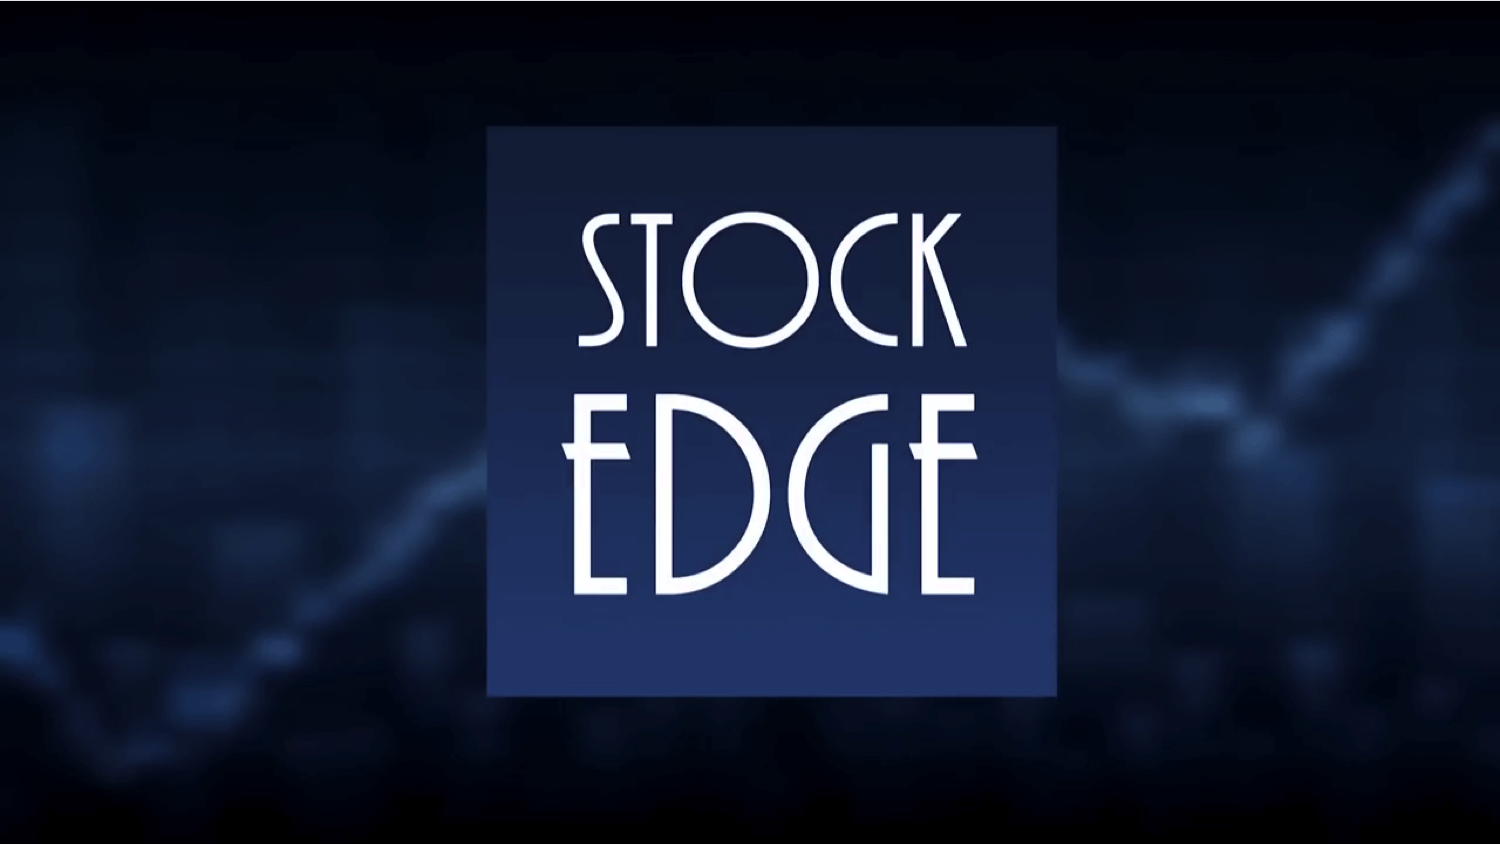 Stock edge